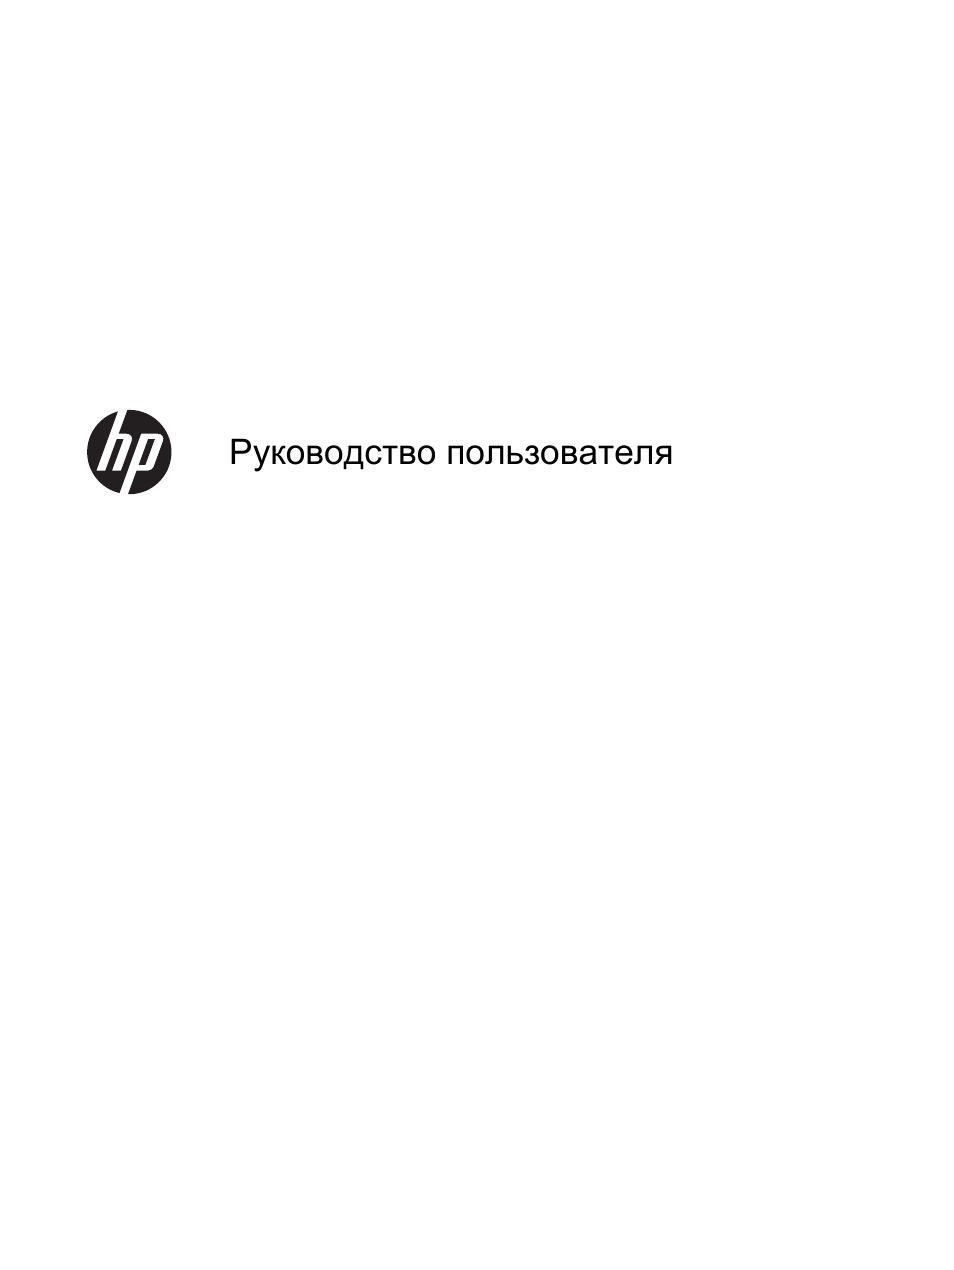 Инструкция по эксплуатации HP Планшетный ПК HP Slate 7 2800 | 20 страниц